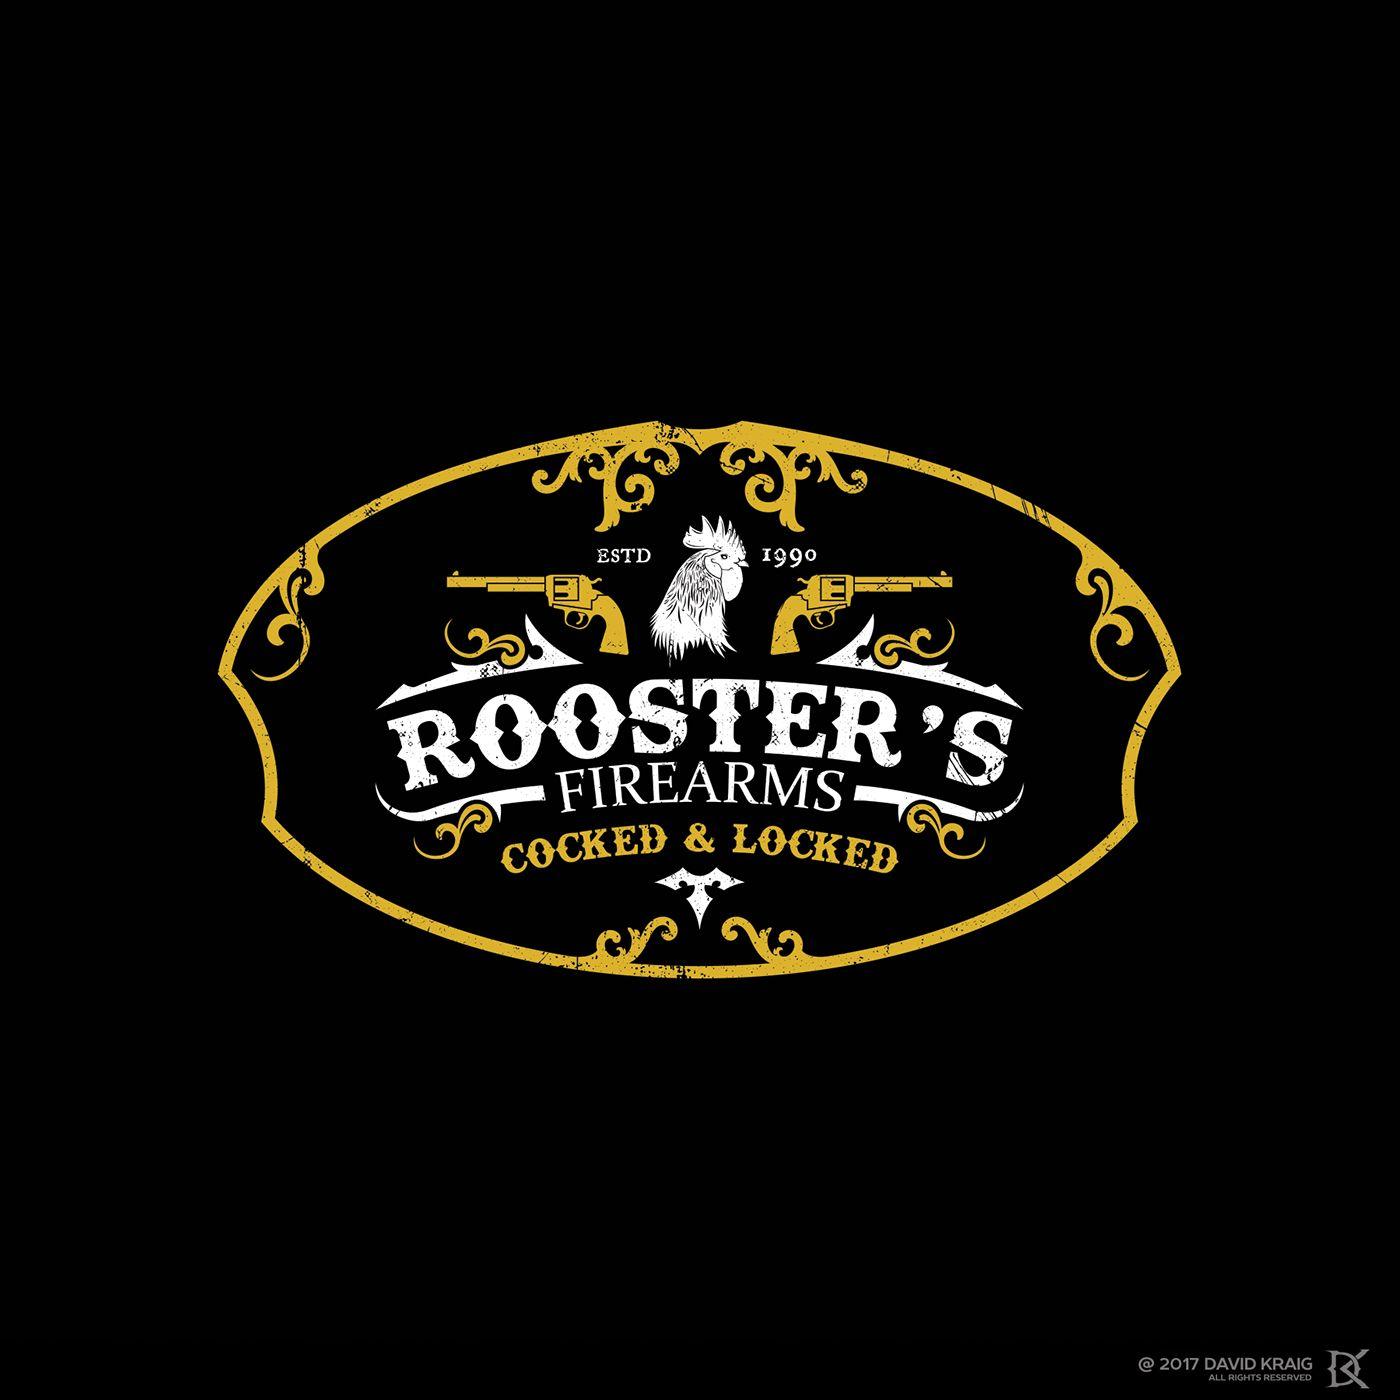 Firearms Logo - Rooster's Firearms logo